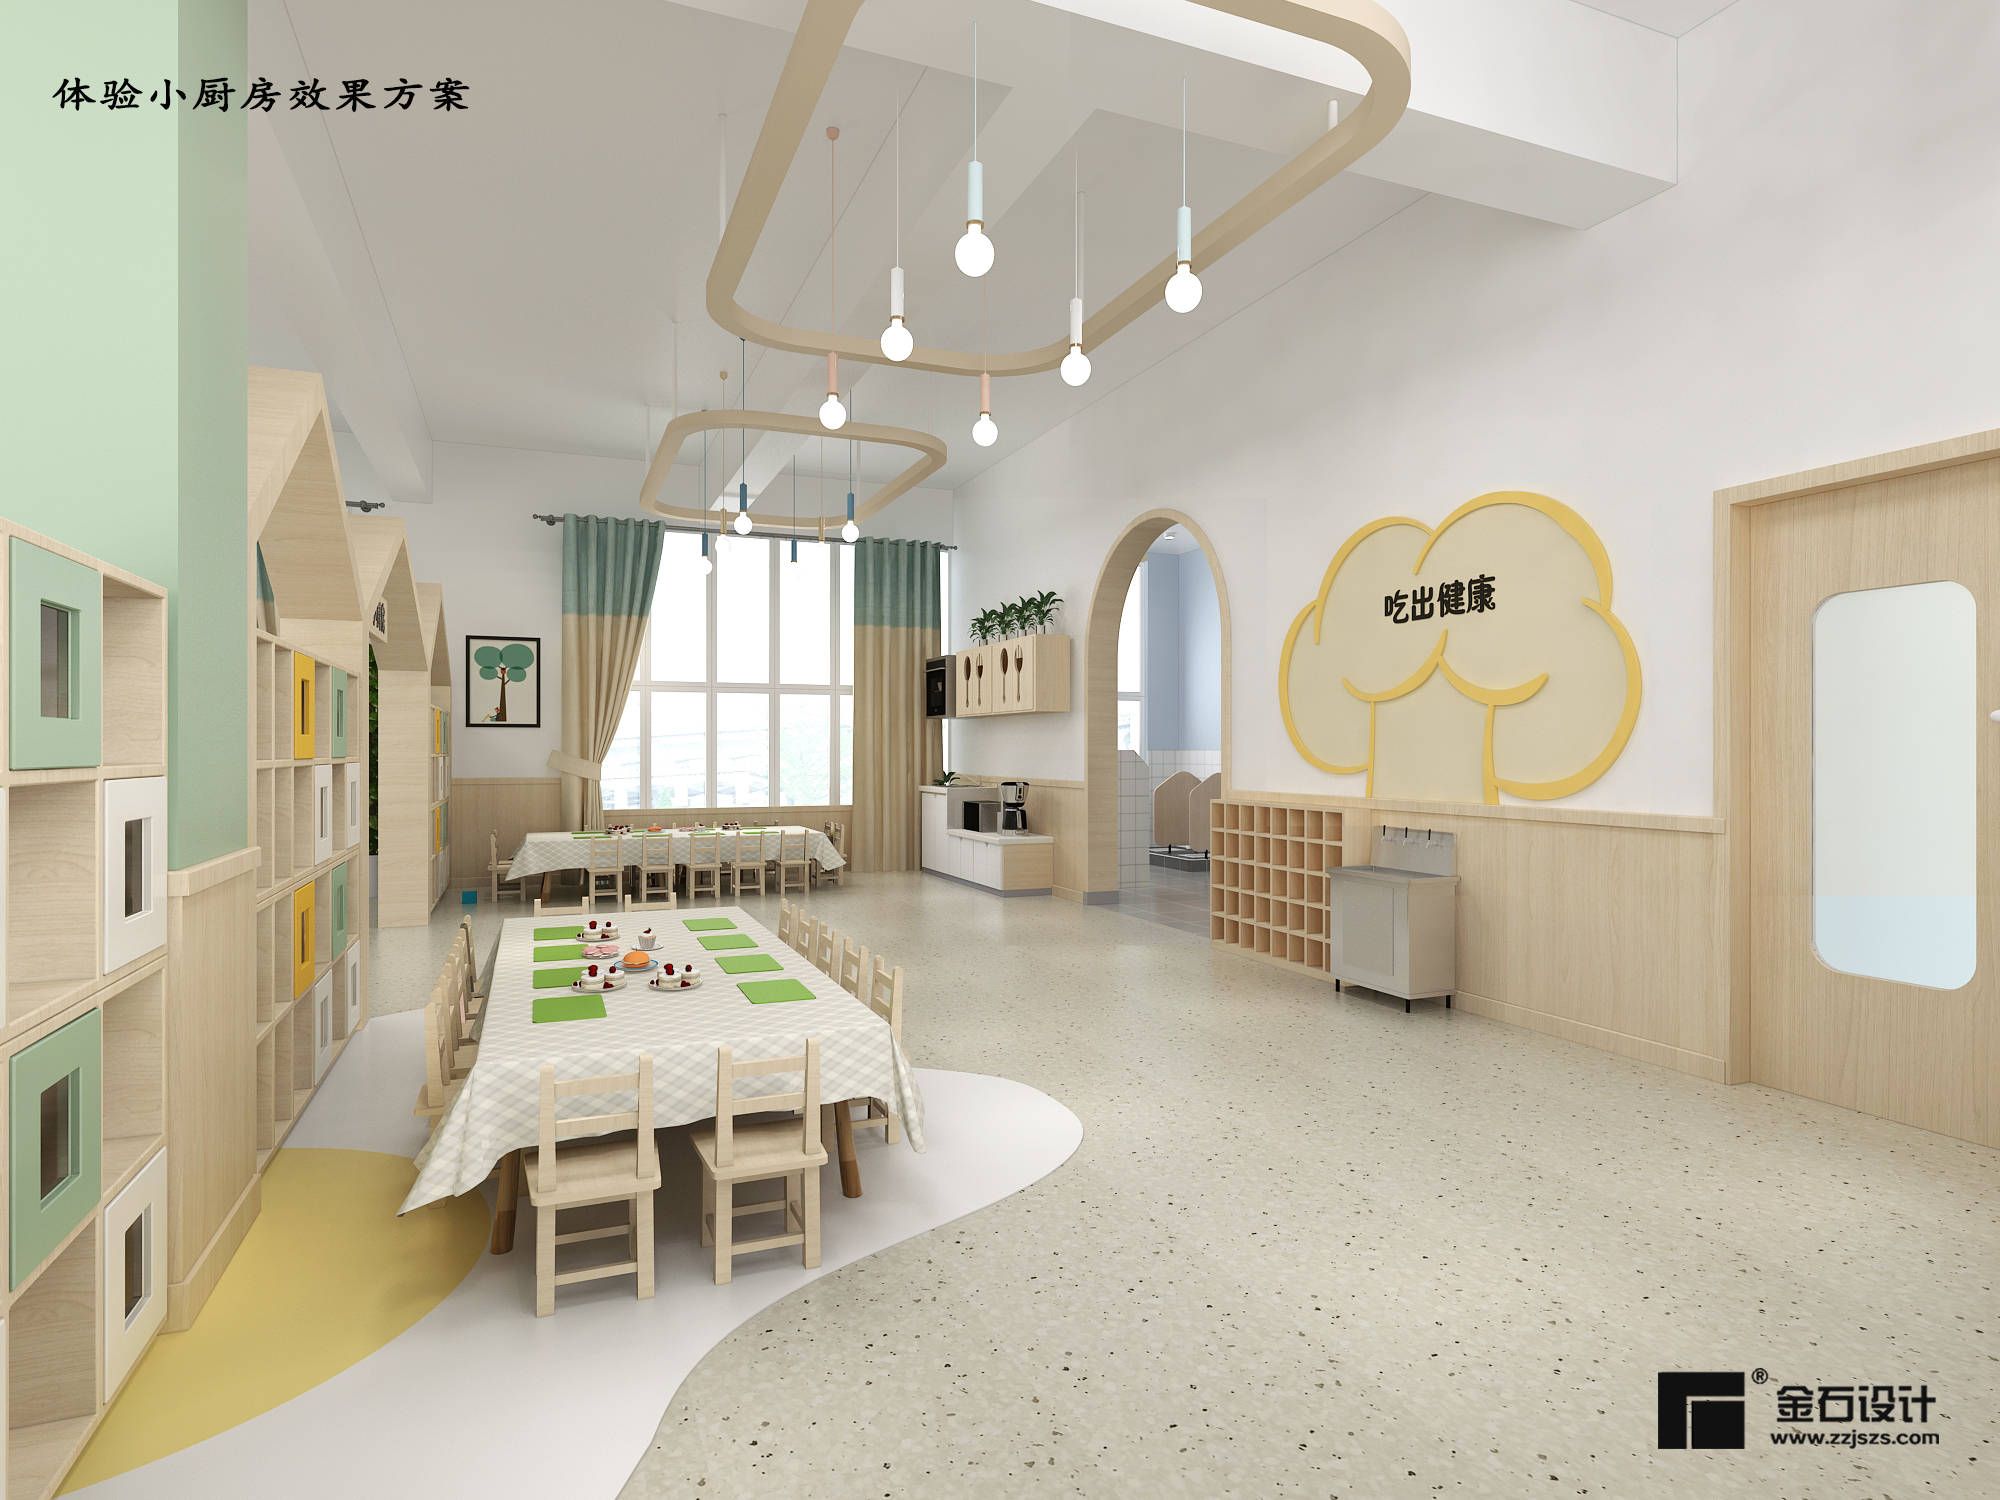 生活|幼儿园设计|遇见独具特色的功能室